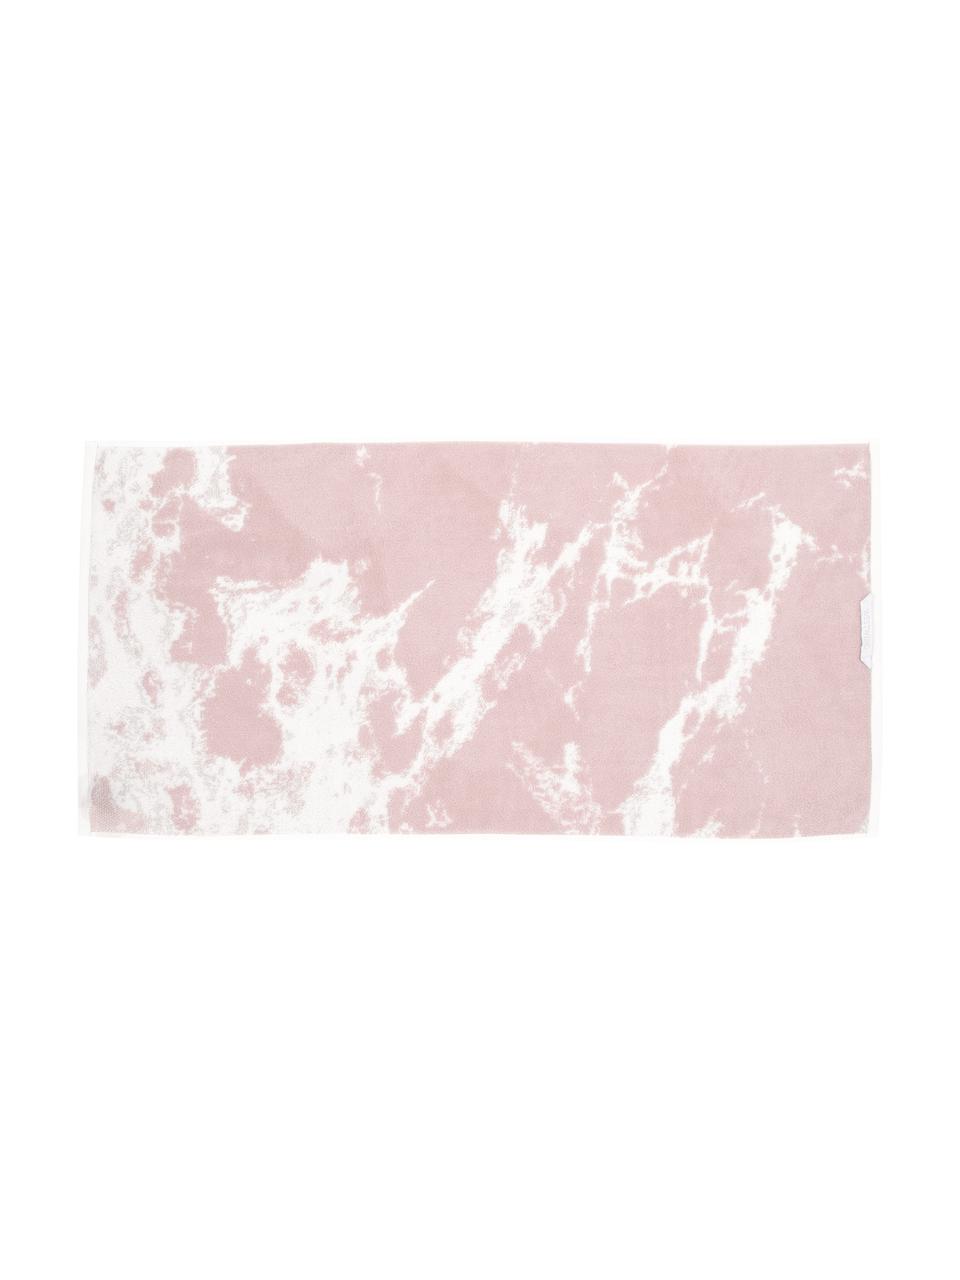 Handdoekenset Malin met marmer print, 3-delig, Roze, crèmewit, met marmer print, Set met verschillende formaten